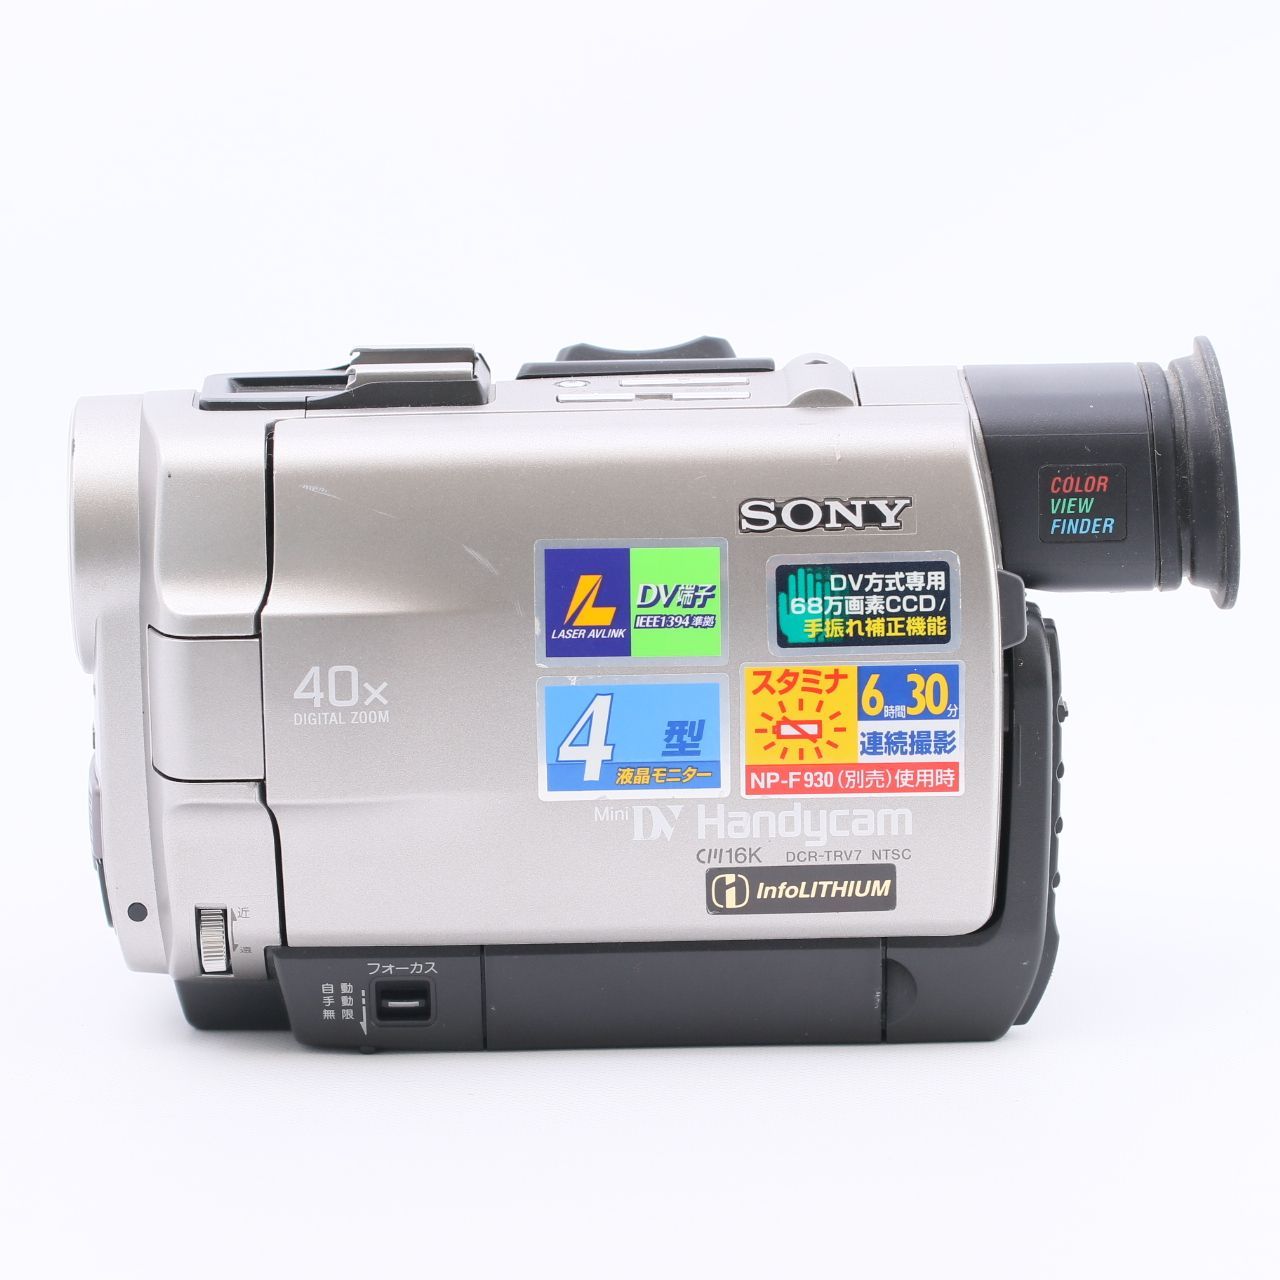 デジタルビデオカメラ(DCR-TRV8 NTSC)動作確認済 - ビデオカメラ